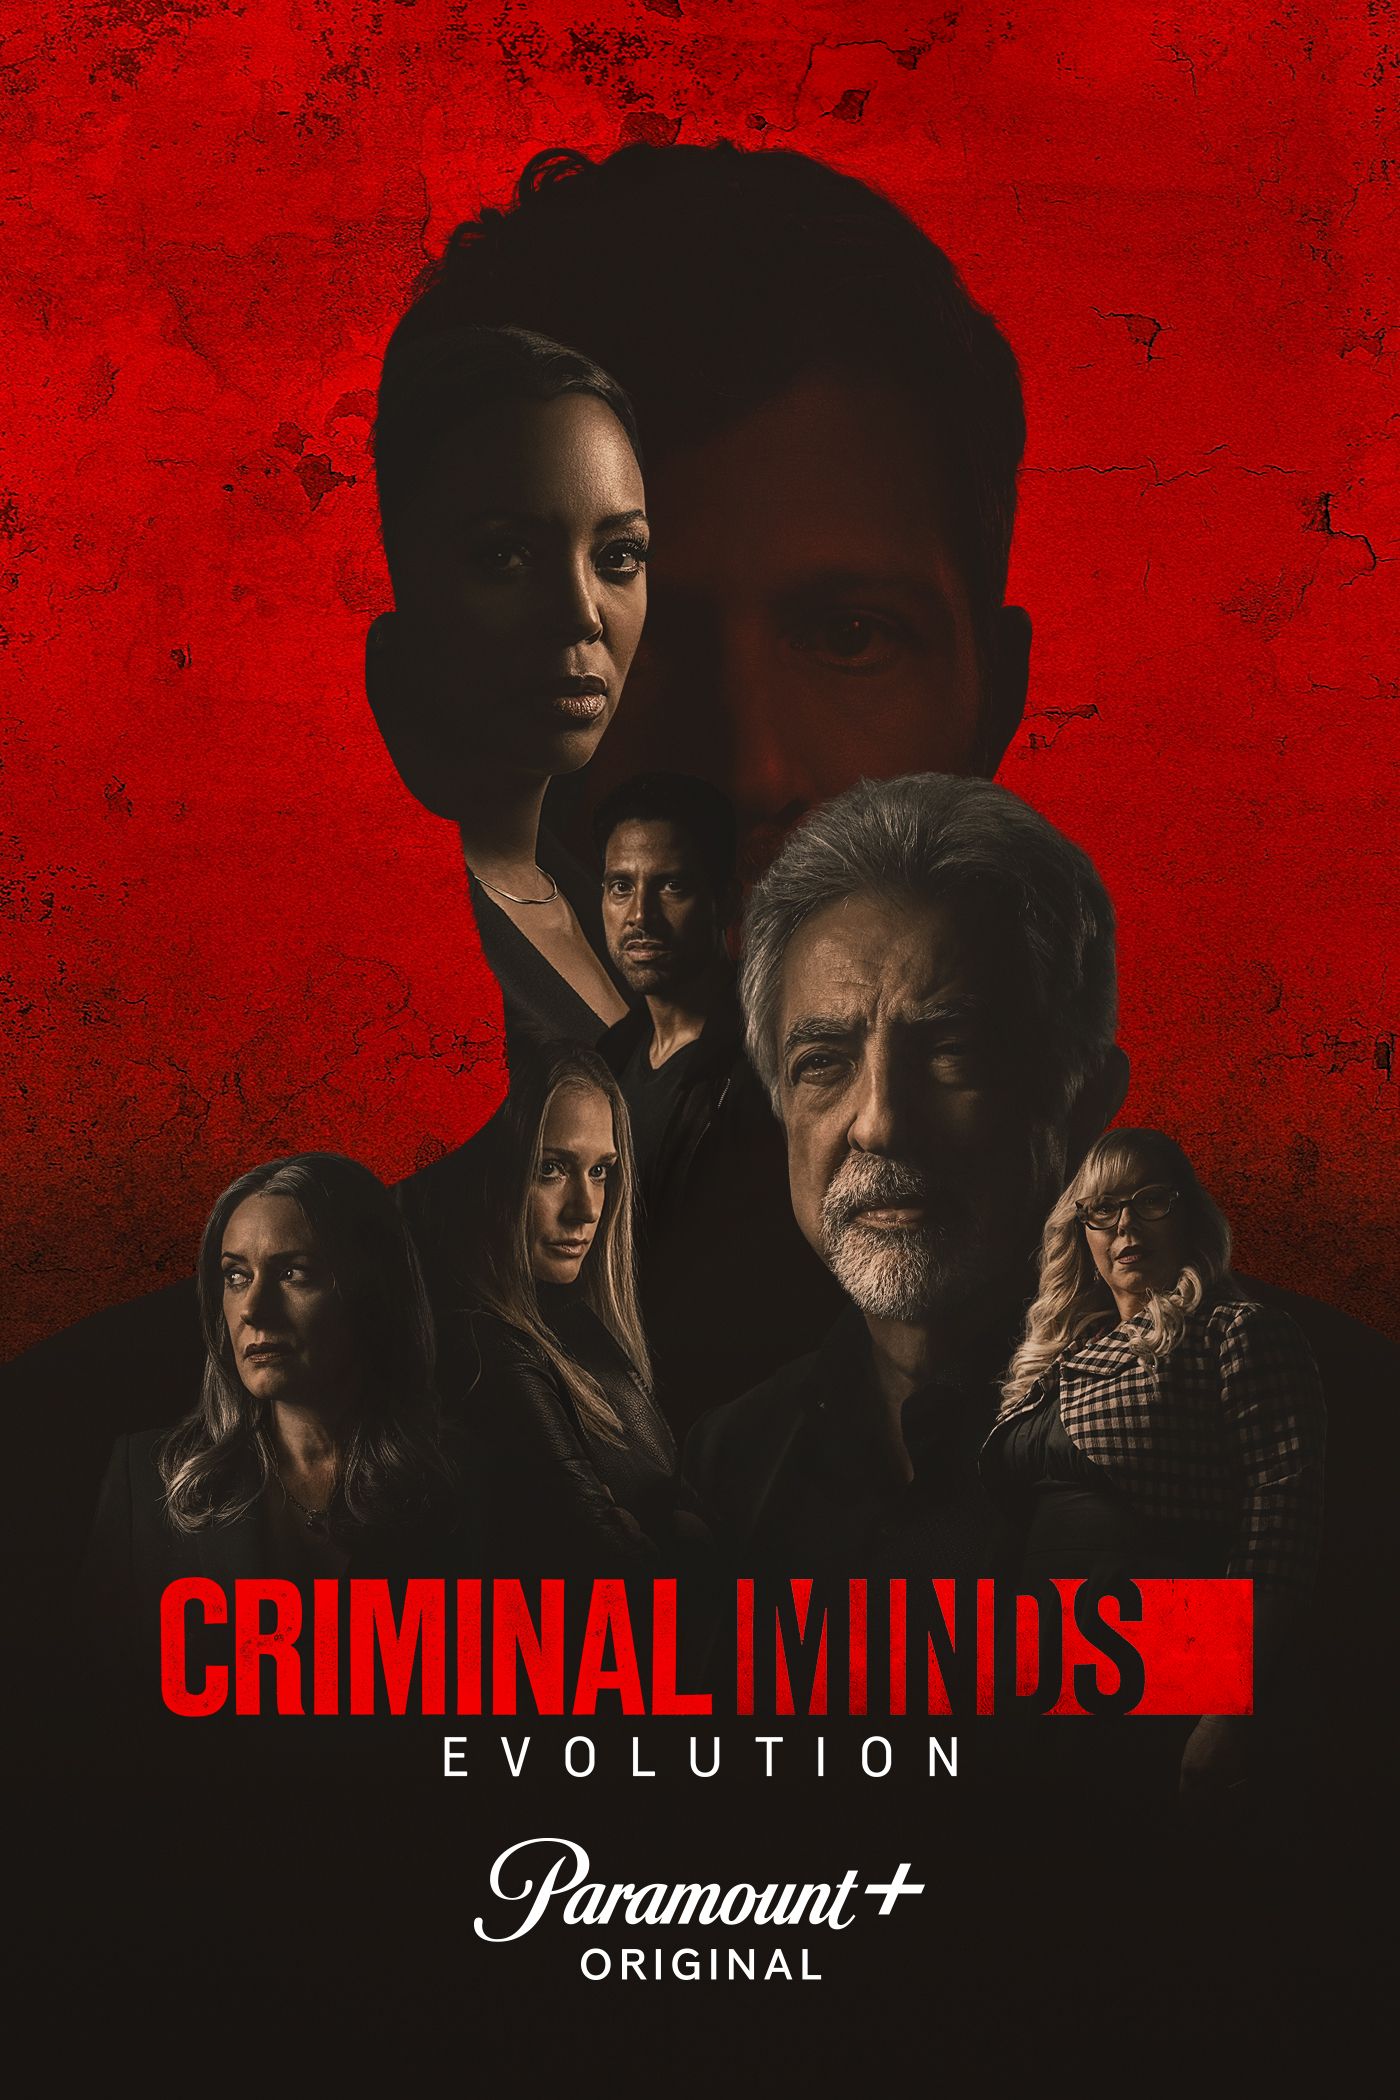 Poster for the TV show Criminal Minds Evolution